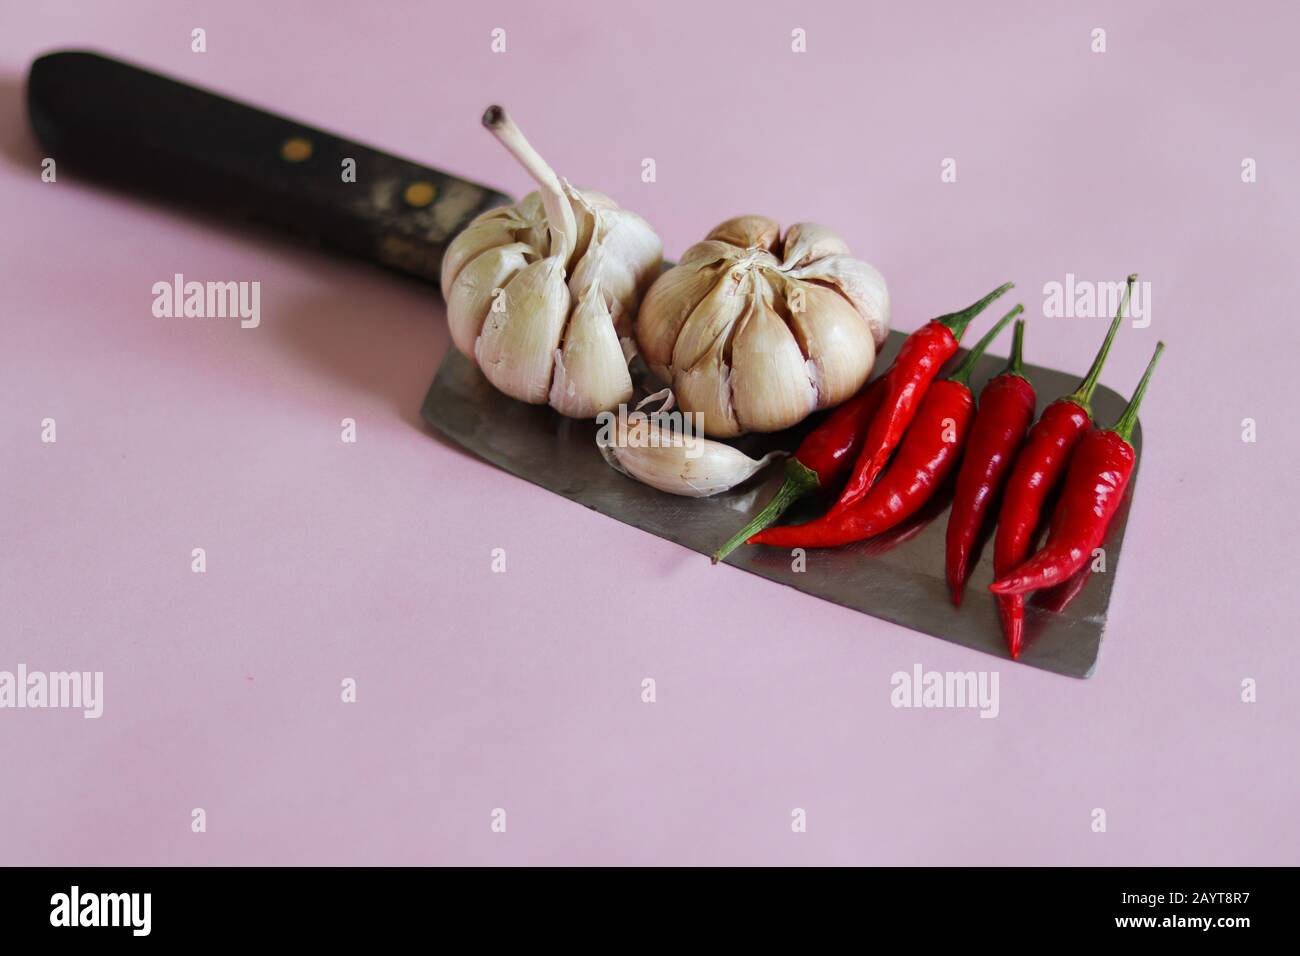 Knoblauchzwiebeln und rote Chilischoten auf einem Messer vor einem rosafarbenen Hintergrund, um das Konzept der Gastronomie, Küche, Küche und Lebensmittelindustrie zu zeigen Stockfoto